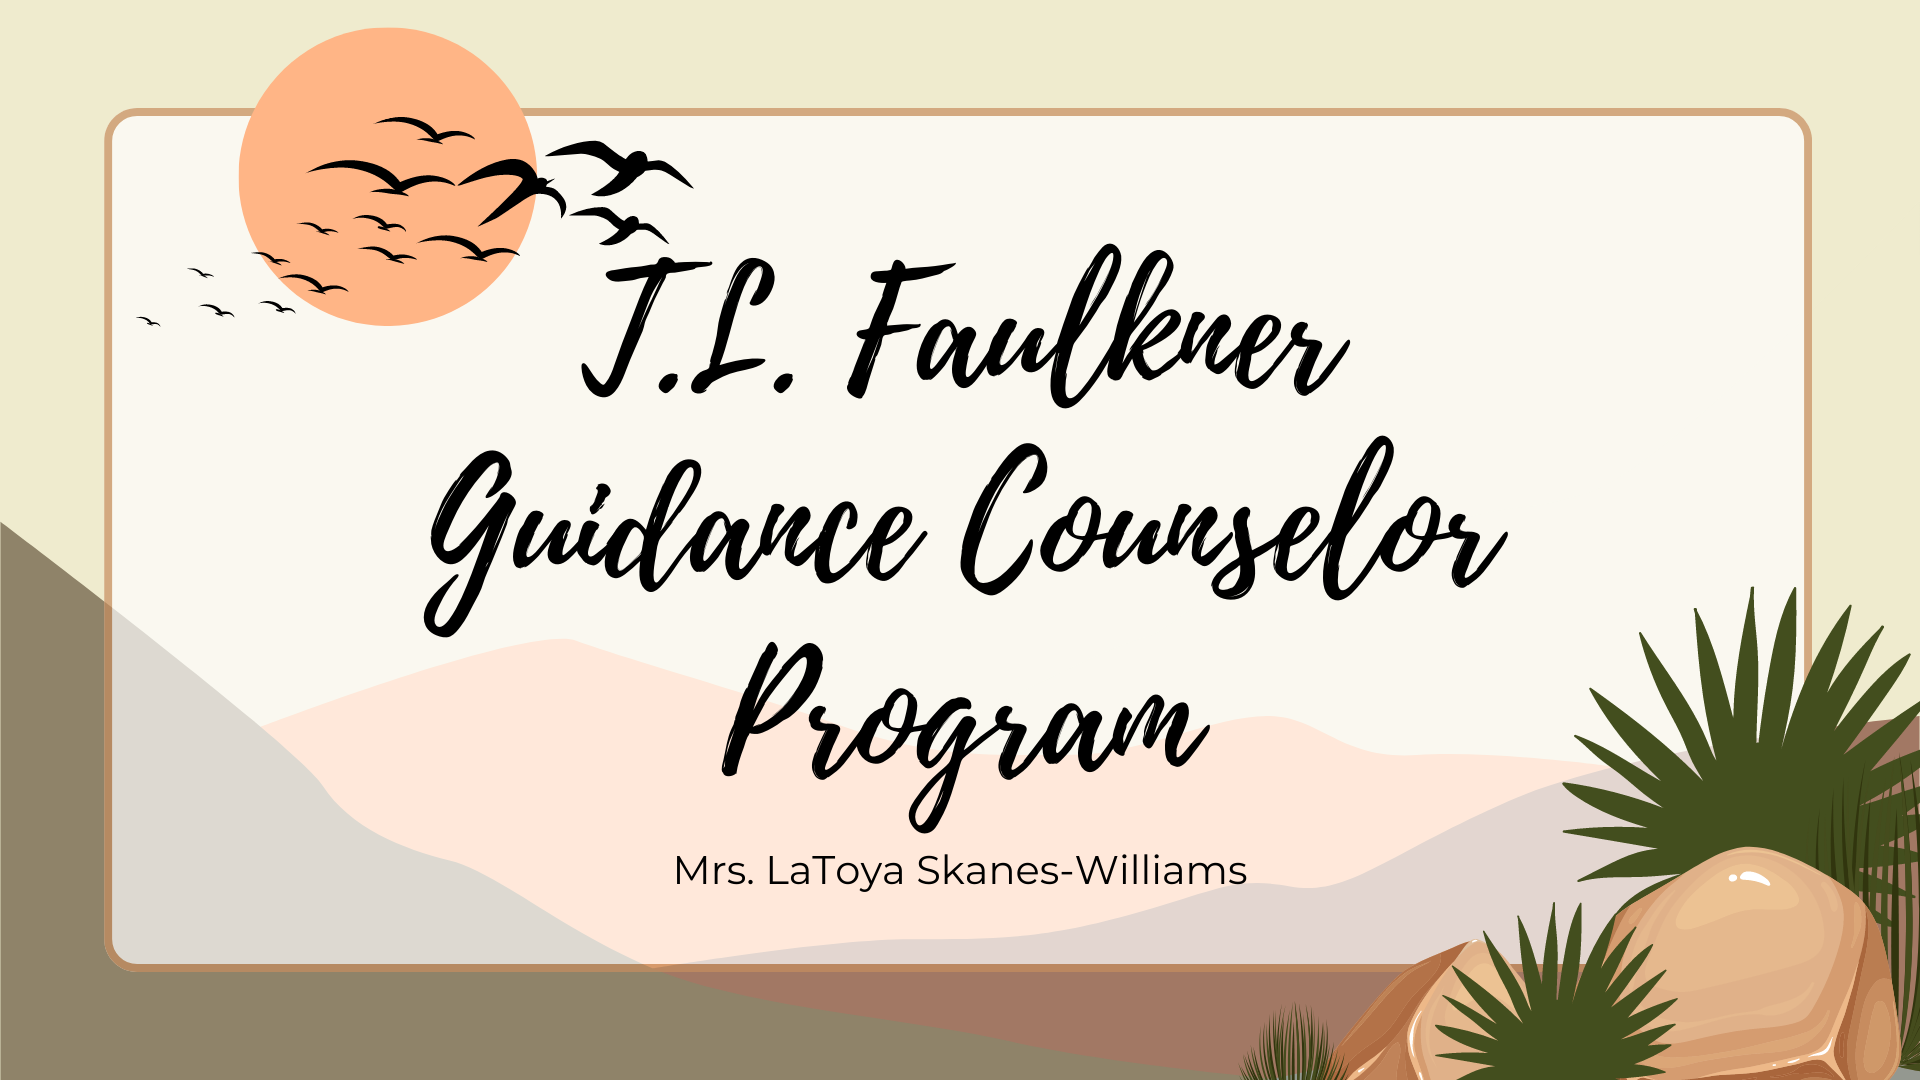 tl faulkner guidance counselor program